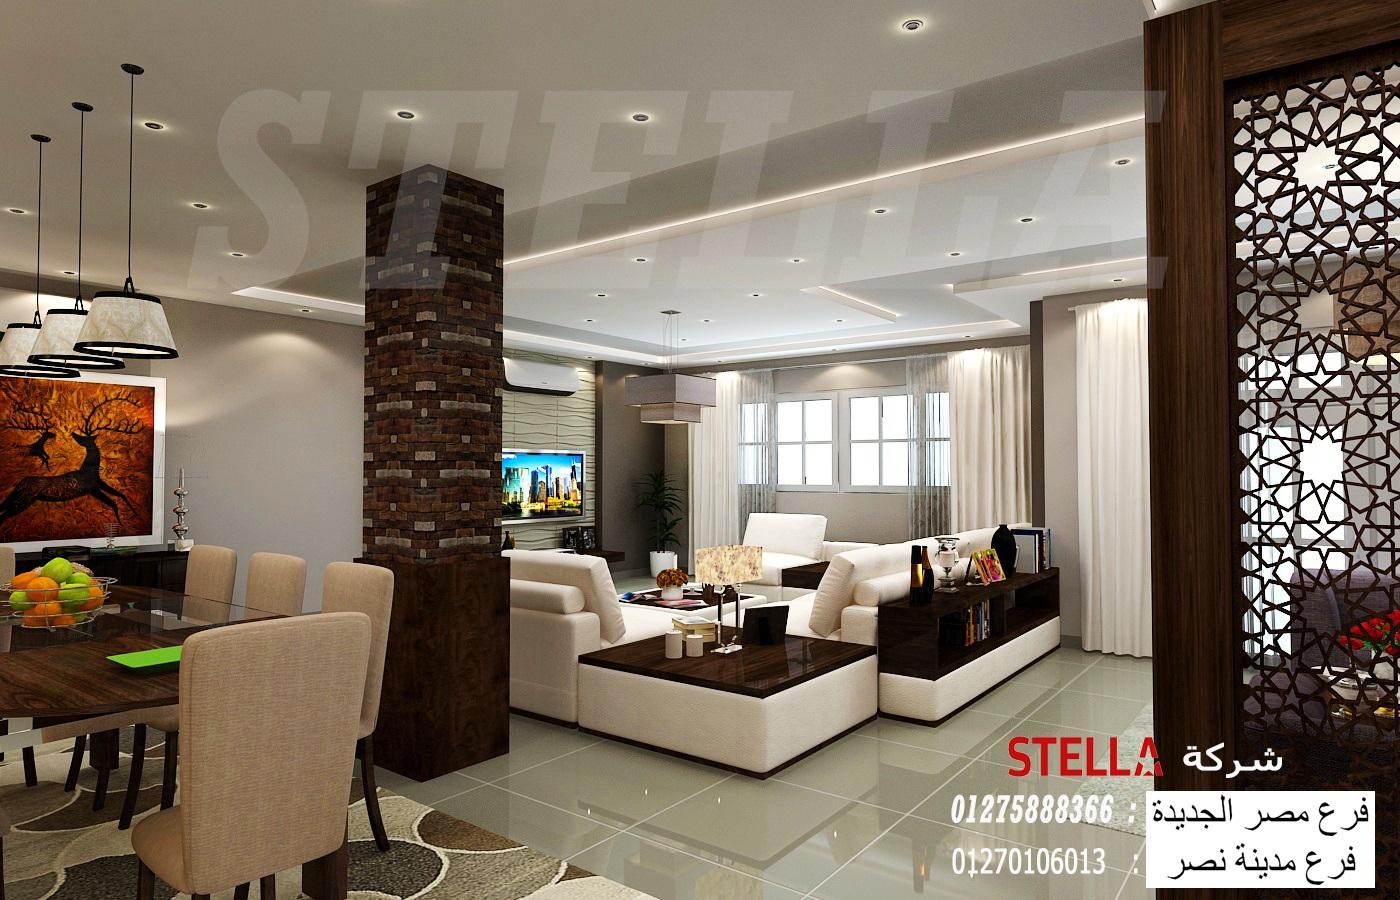 شركة تشطيب التجمع الخامس / شركة ستيلا افضل شركة تصميم وتنفيذ ديكورات 01210044806 375355390